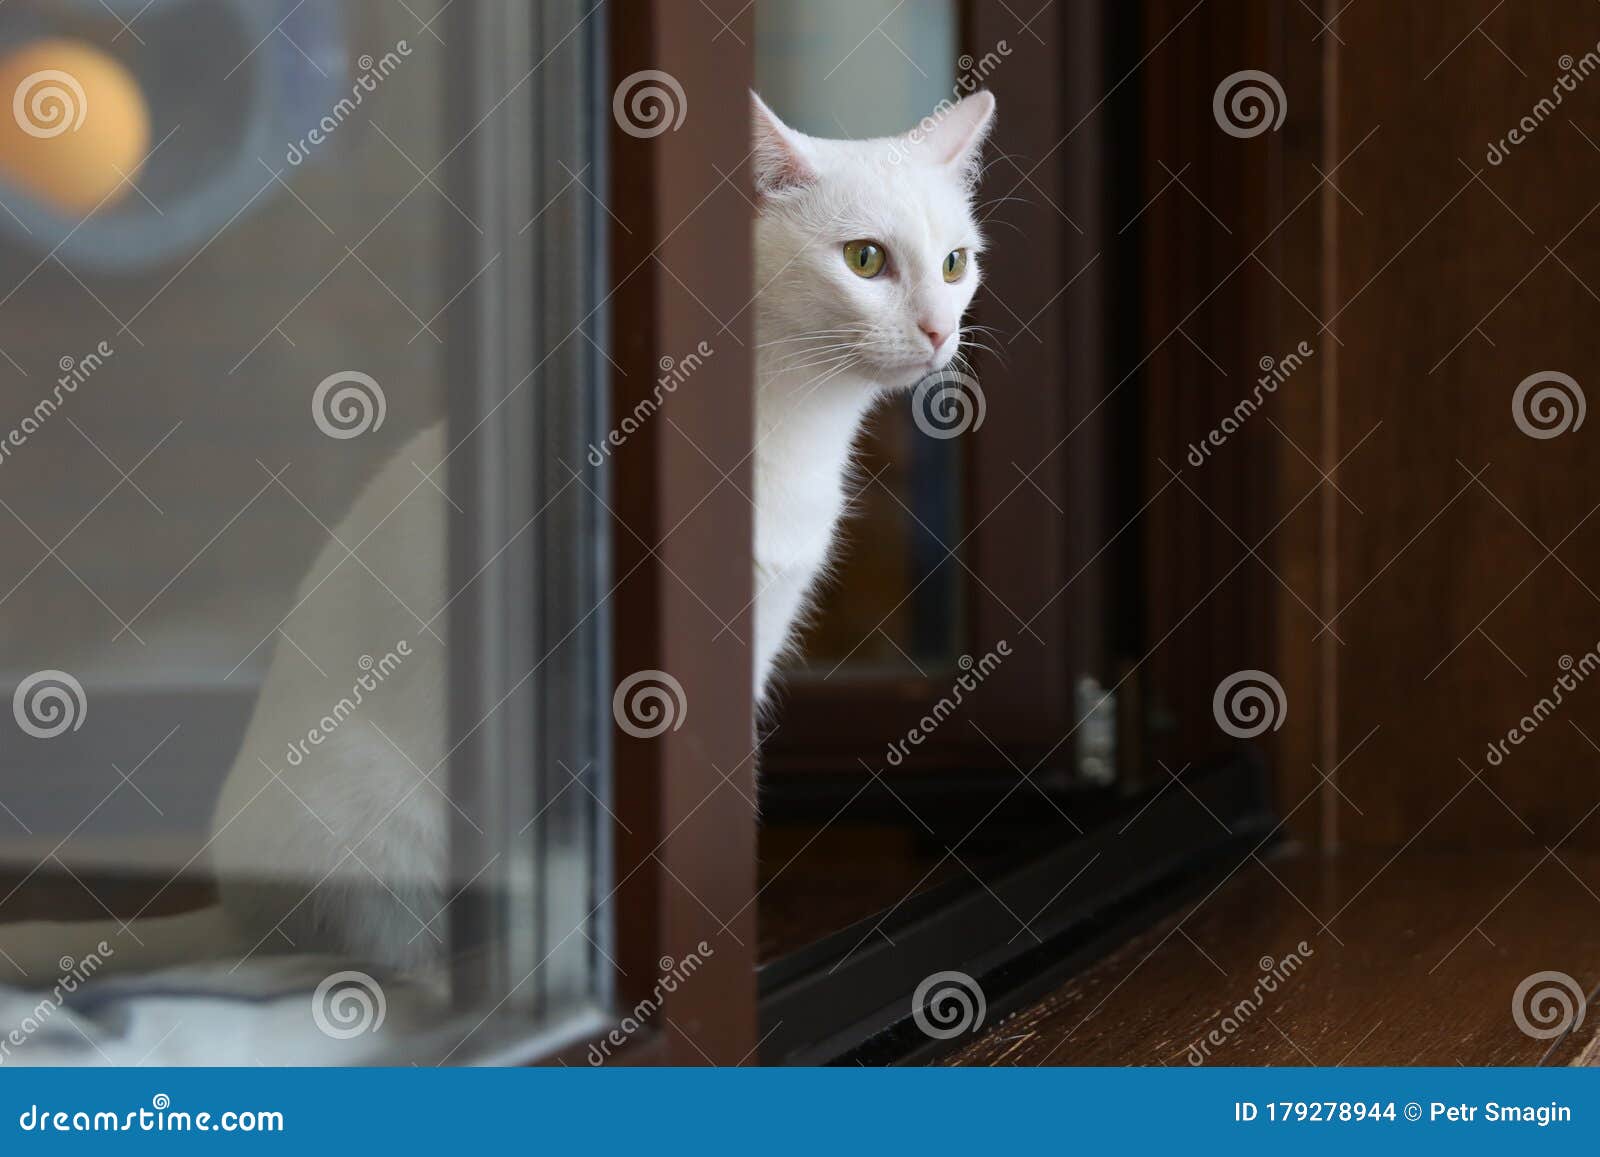 家白猫画像库存照片 图片包括有家白猫画像